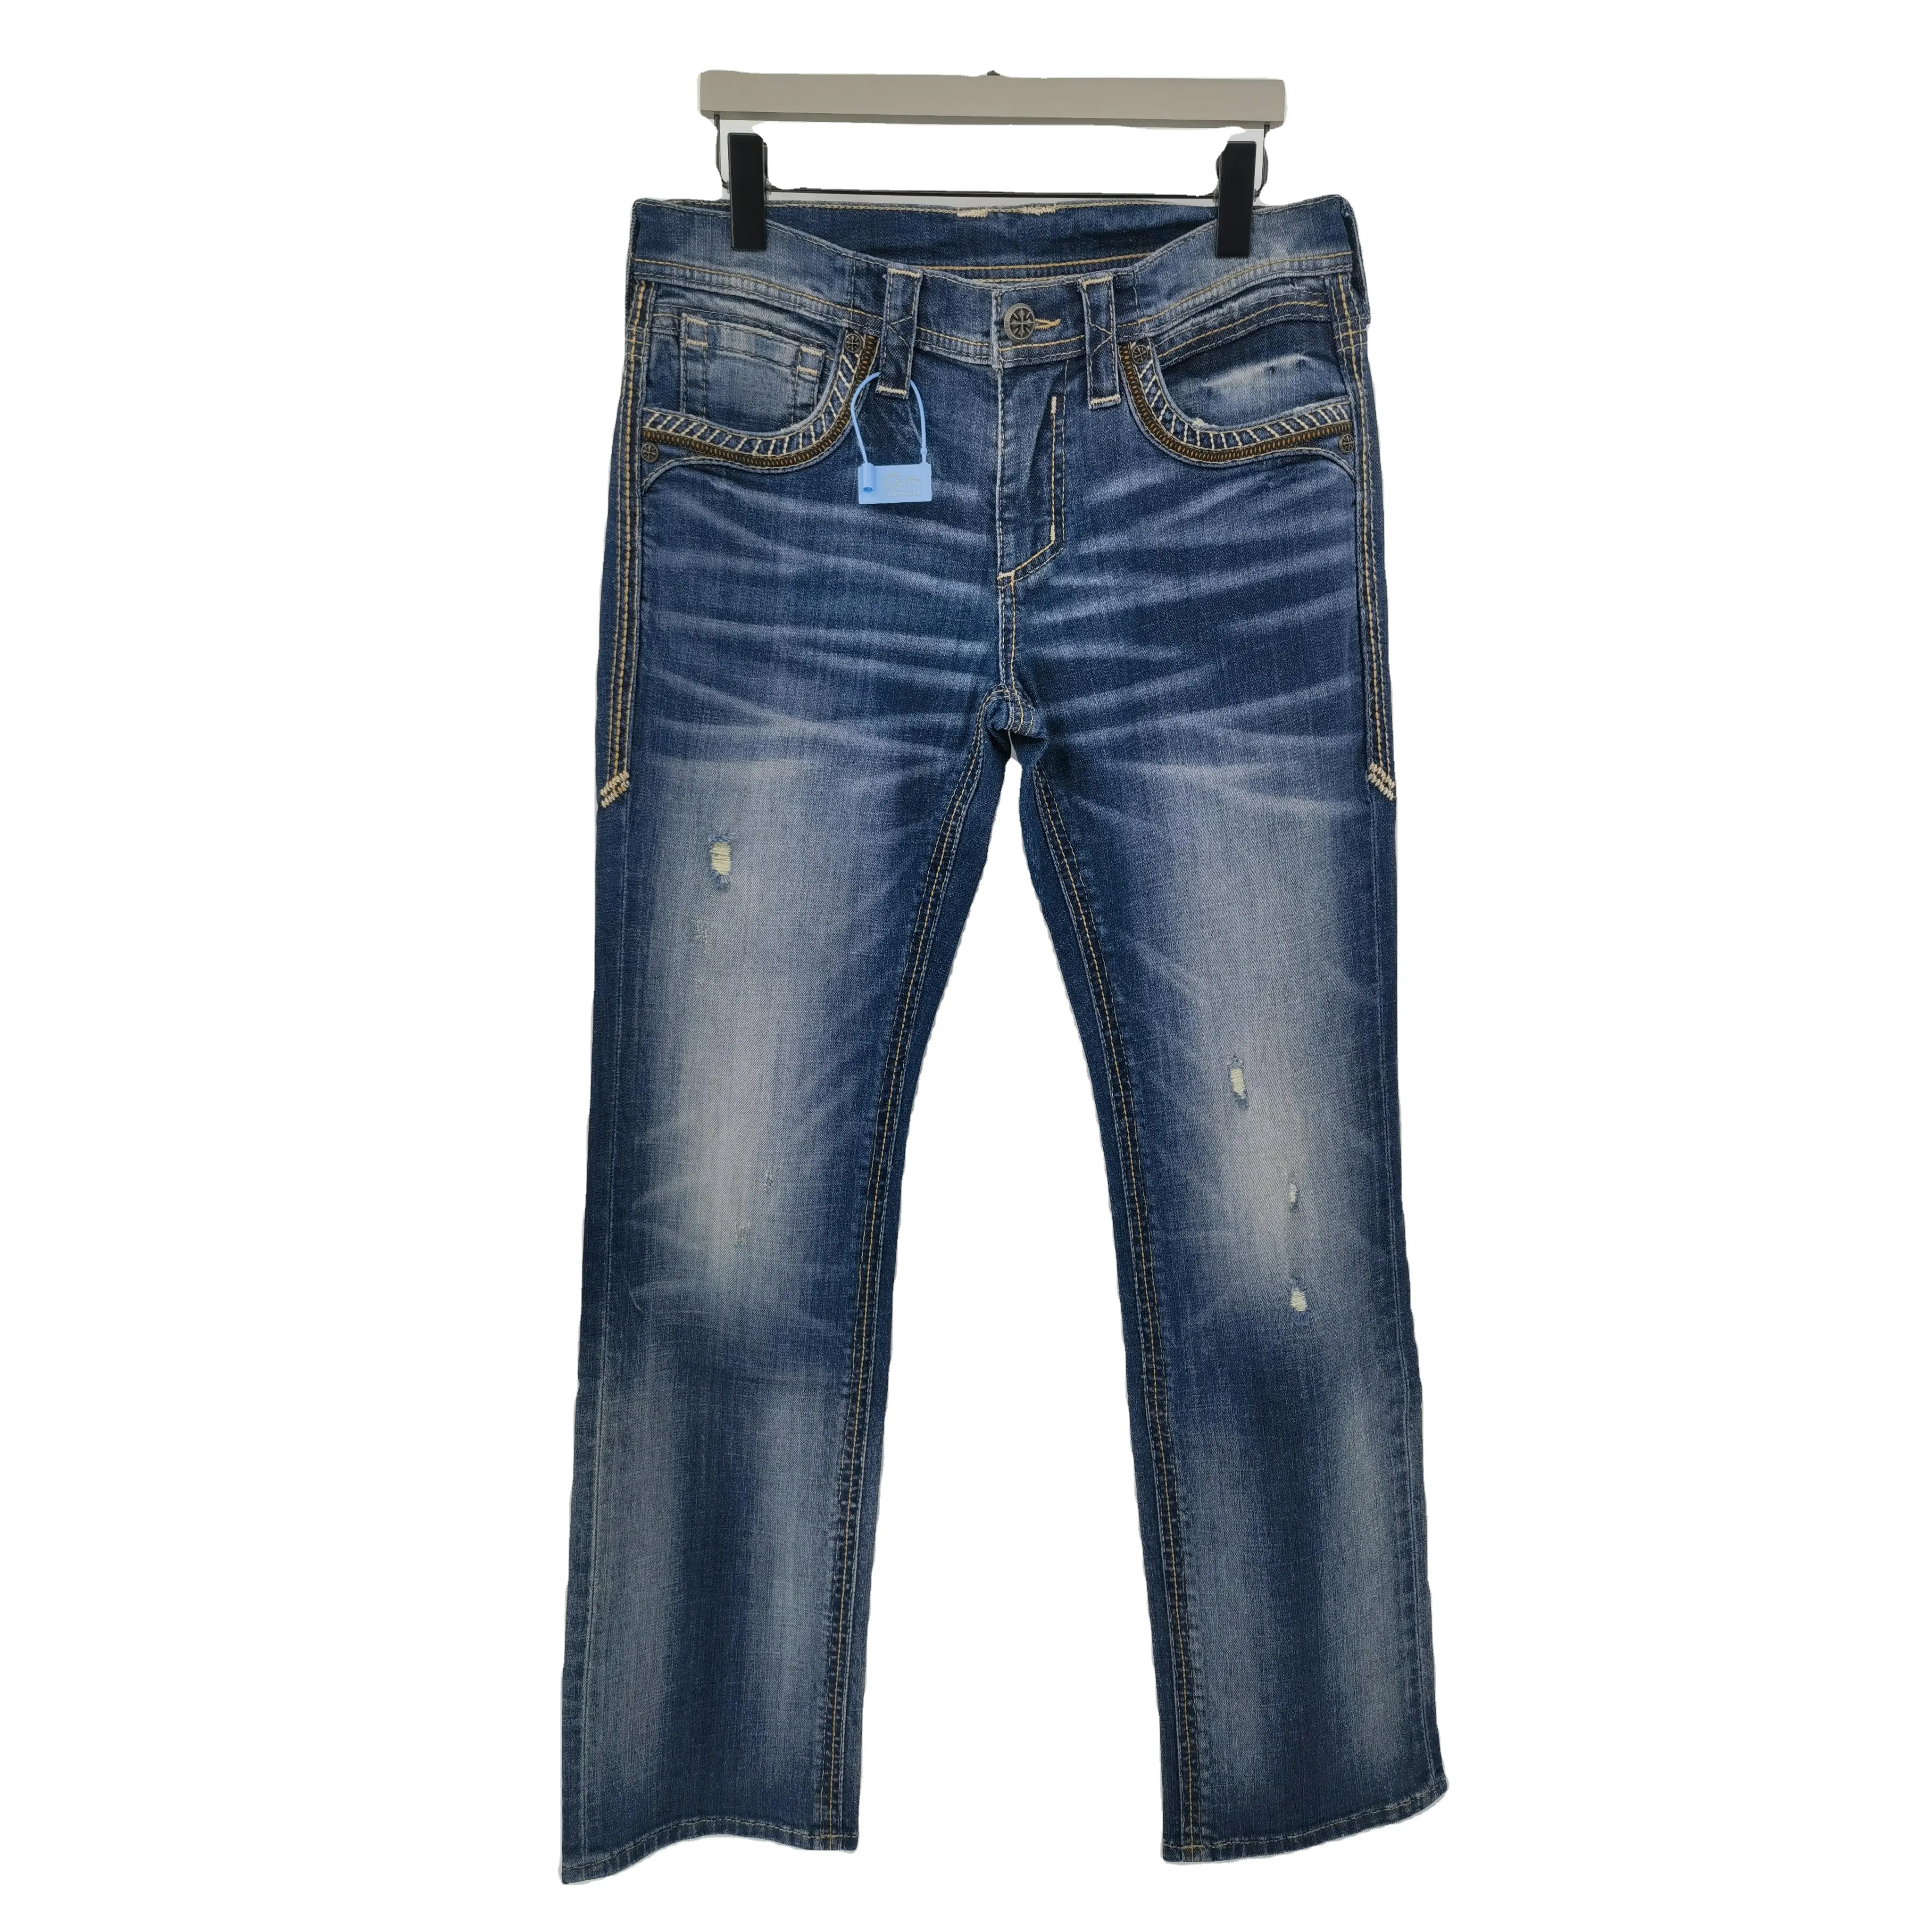 long wide leg bulk jeans 501 original for men pants slim bell bottom s stacked flare jeans cargo coloured set wholesale regular